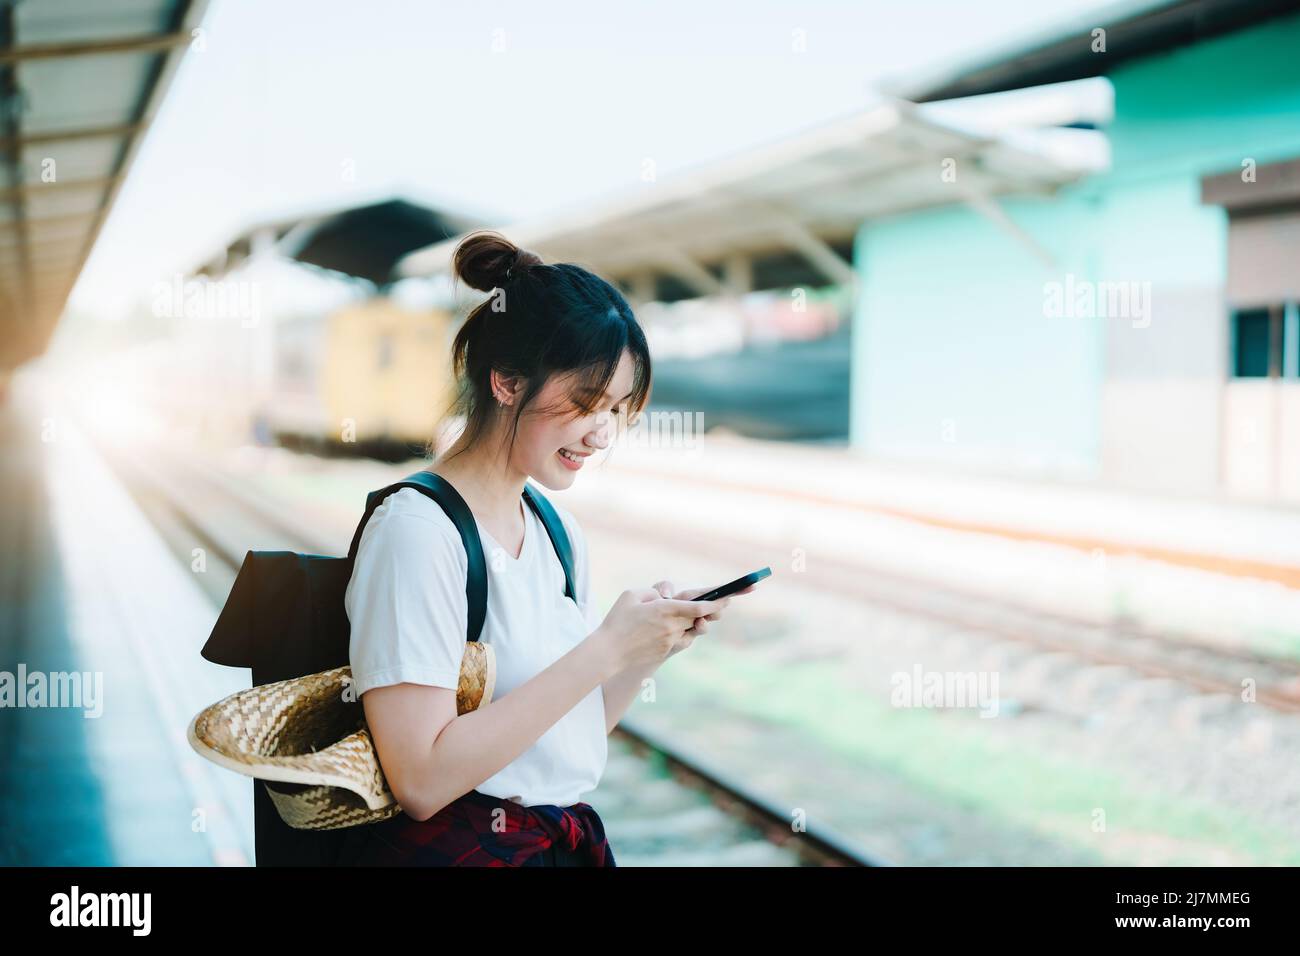 Estate, relax, vacanza, viaggio, ritratto di bella ragazza asiatica utilizzando lo smartphone cellulare per chiamare gli amici alla stazione ferroviaria mentre si aspetta Foto Stock